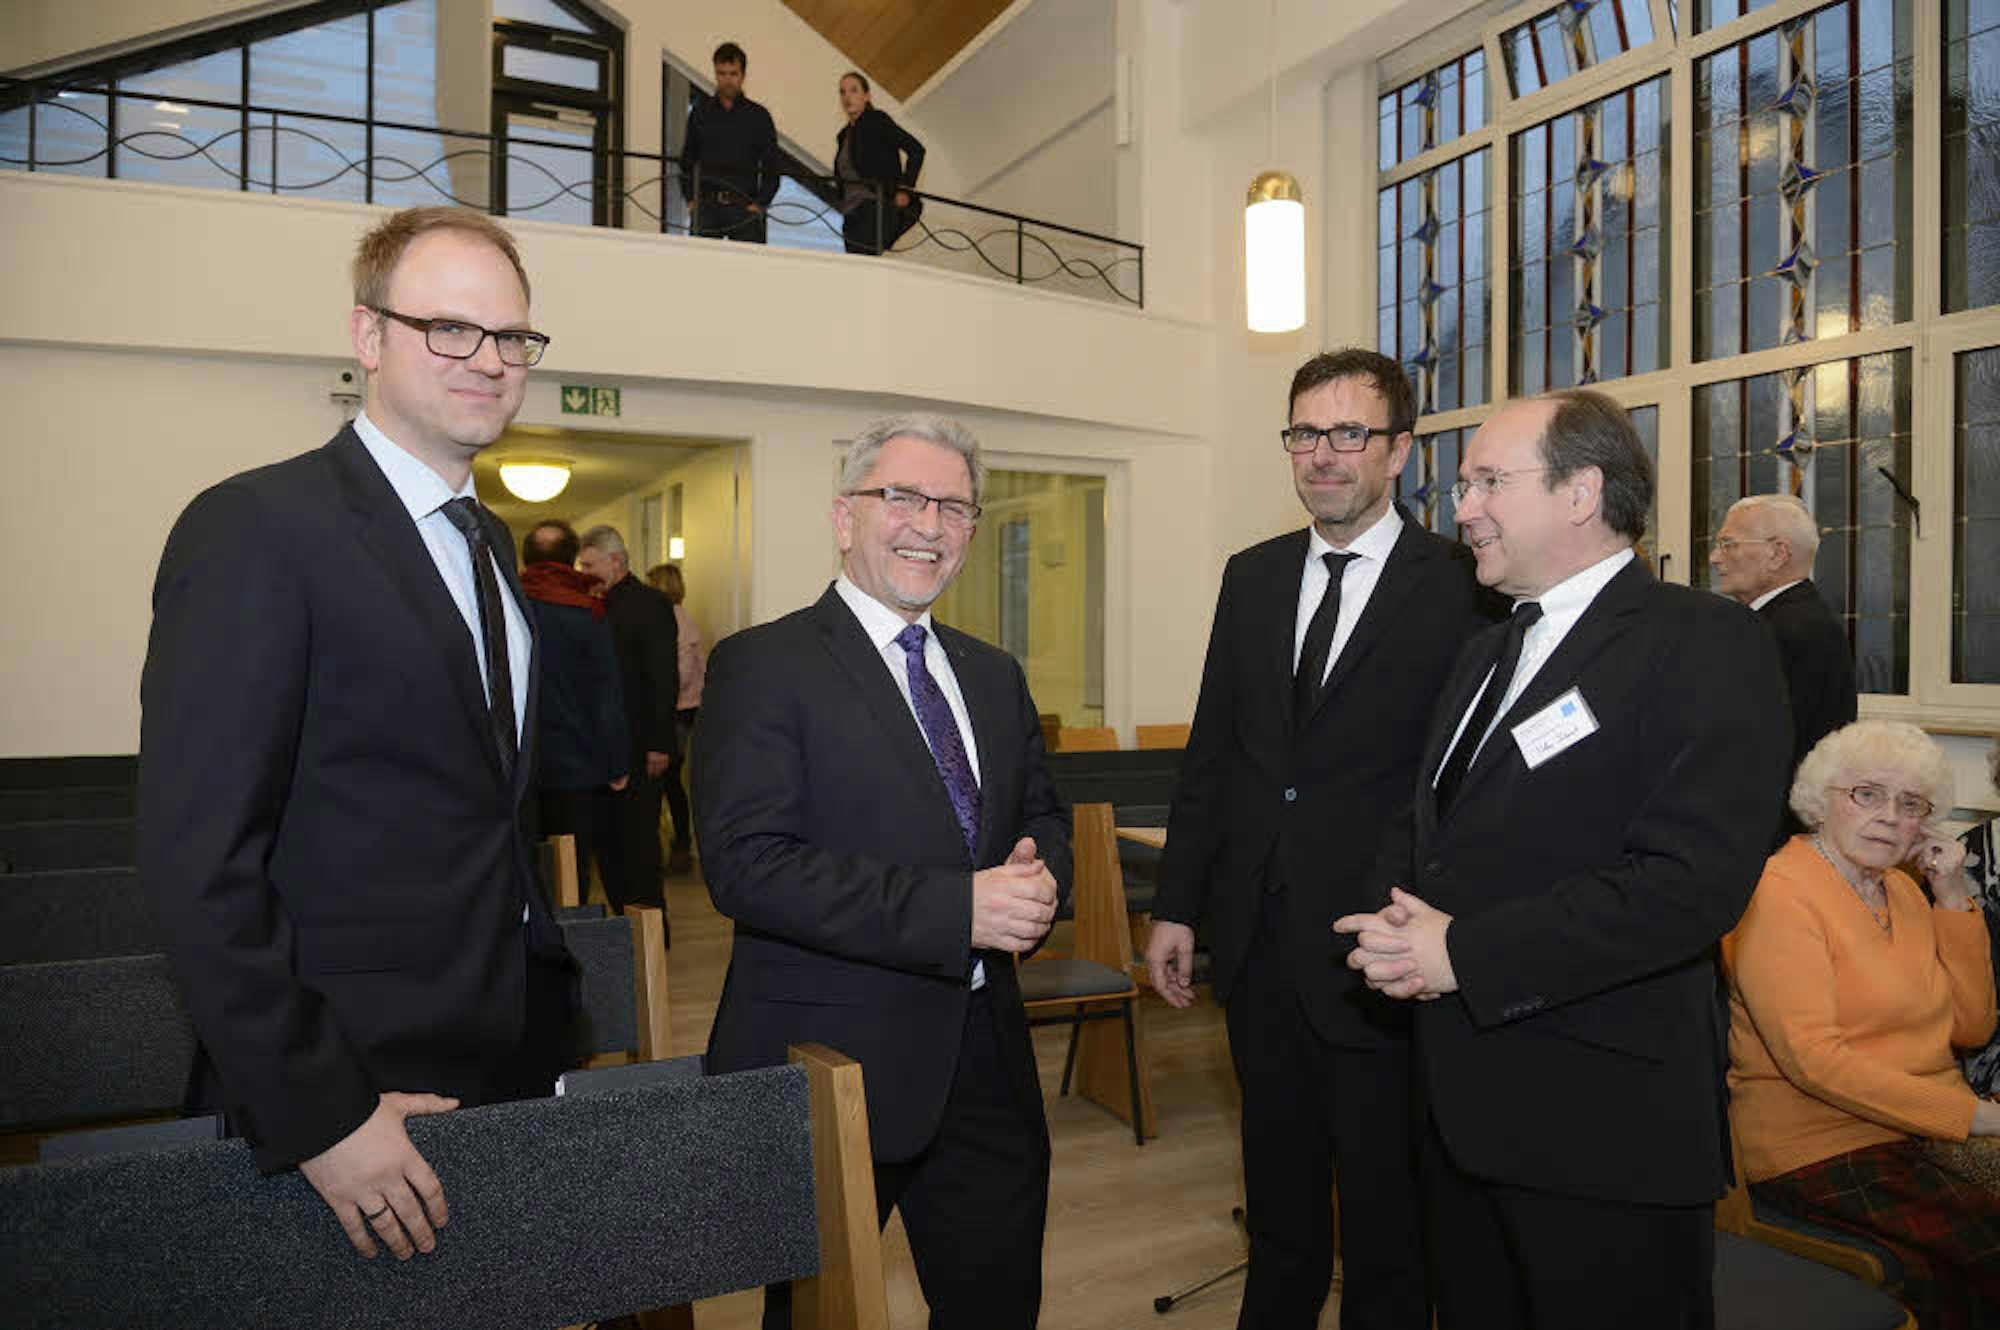 Architekt Tobias Pütz, Josef Willnecker, Bischof Rainer Sommer und Volker Schmidt (v. l.) bei der Wiedereröffnung der Kirche